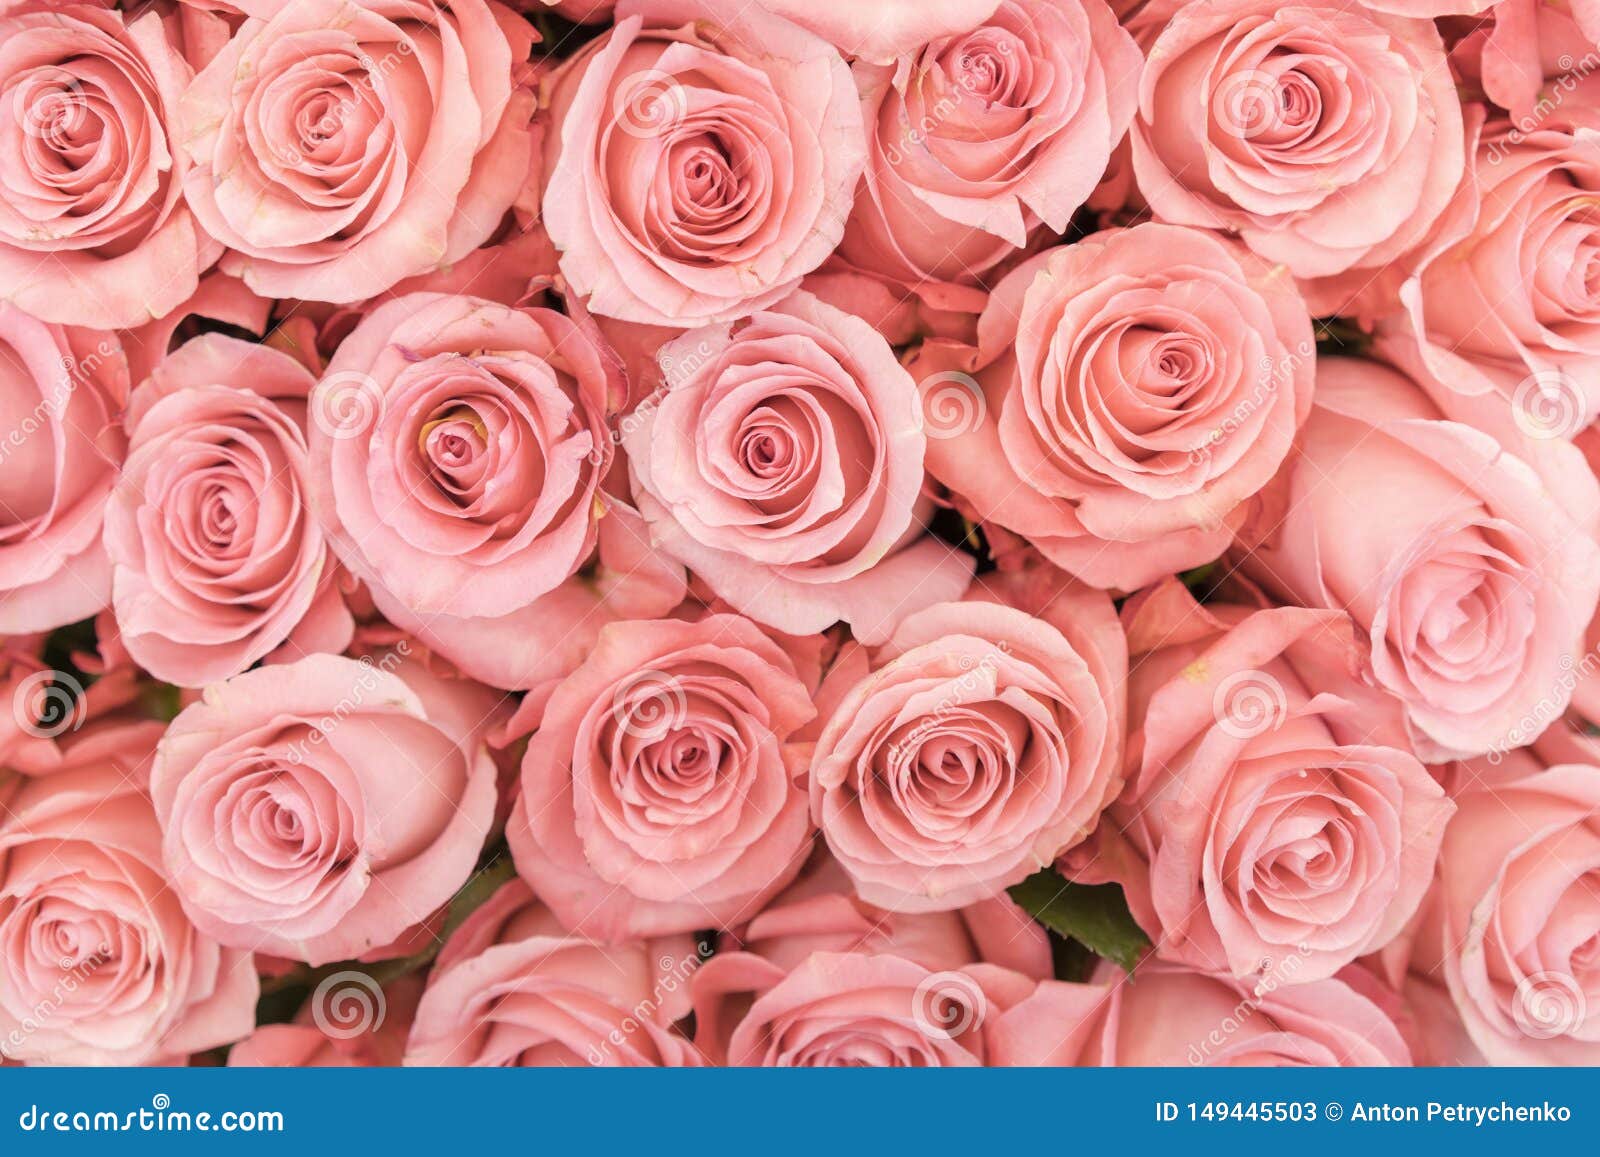 Nền hoa hồng cam và đào mềm đẹp như mơ, với sự kết hợp giữa những cánh hoa hồng màu hồng tươi sáng và đào mềm như lụa. Đó chắc chắn sẽ mang đến cho bạn những trải nghiệm tuyệt vời về sự ngọt ngào và ấm áp của tình yêu. Bất kỳ ai đến gần cũng không thể khỏi chú ý và say đắm trước vẻ đẹp tuyệt vời đó!